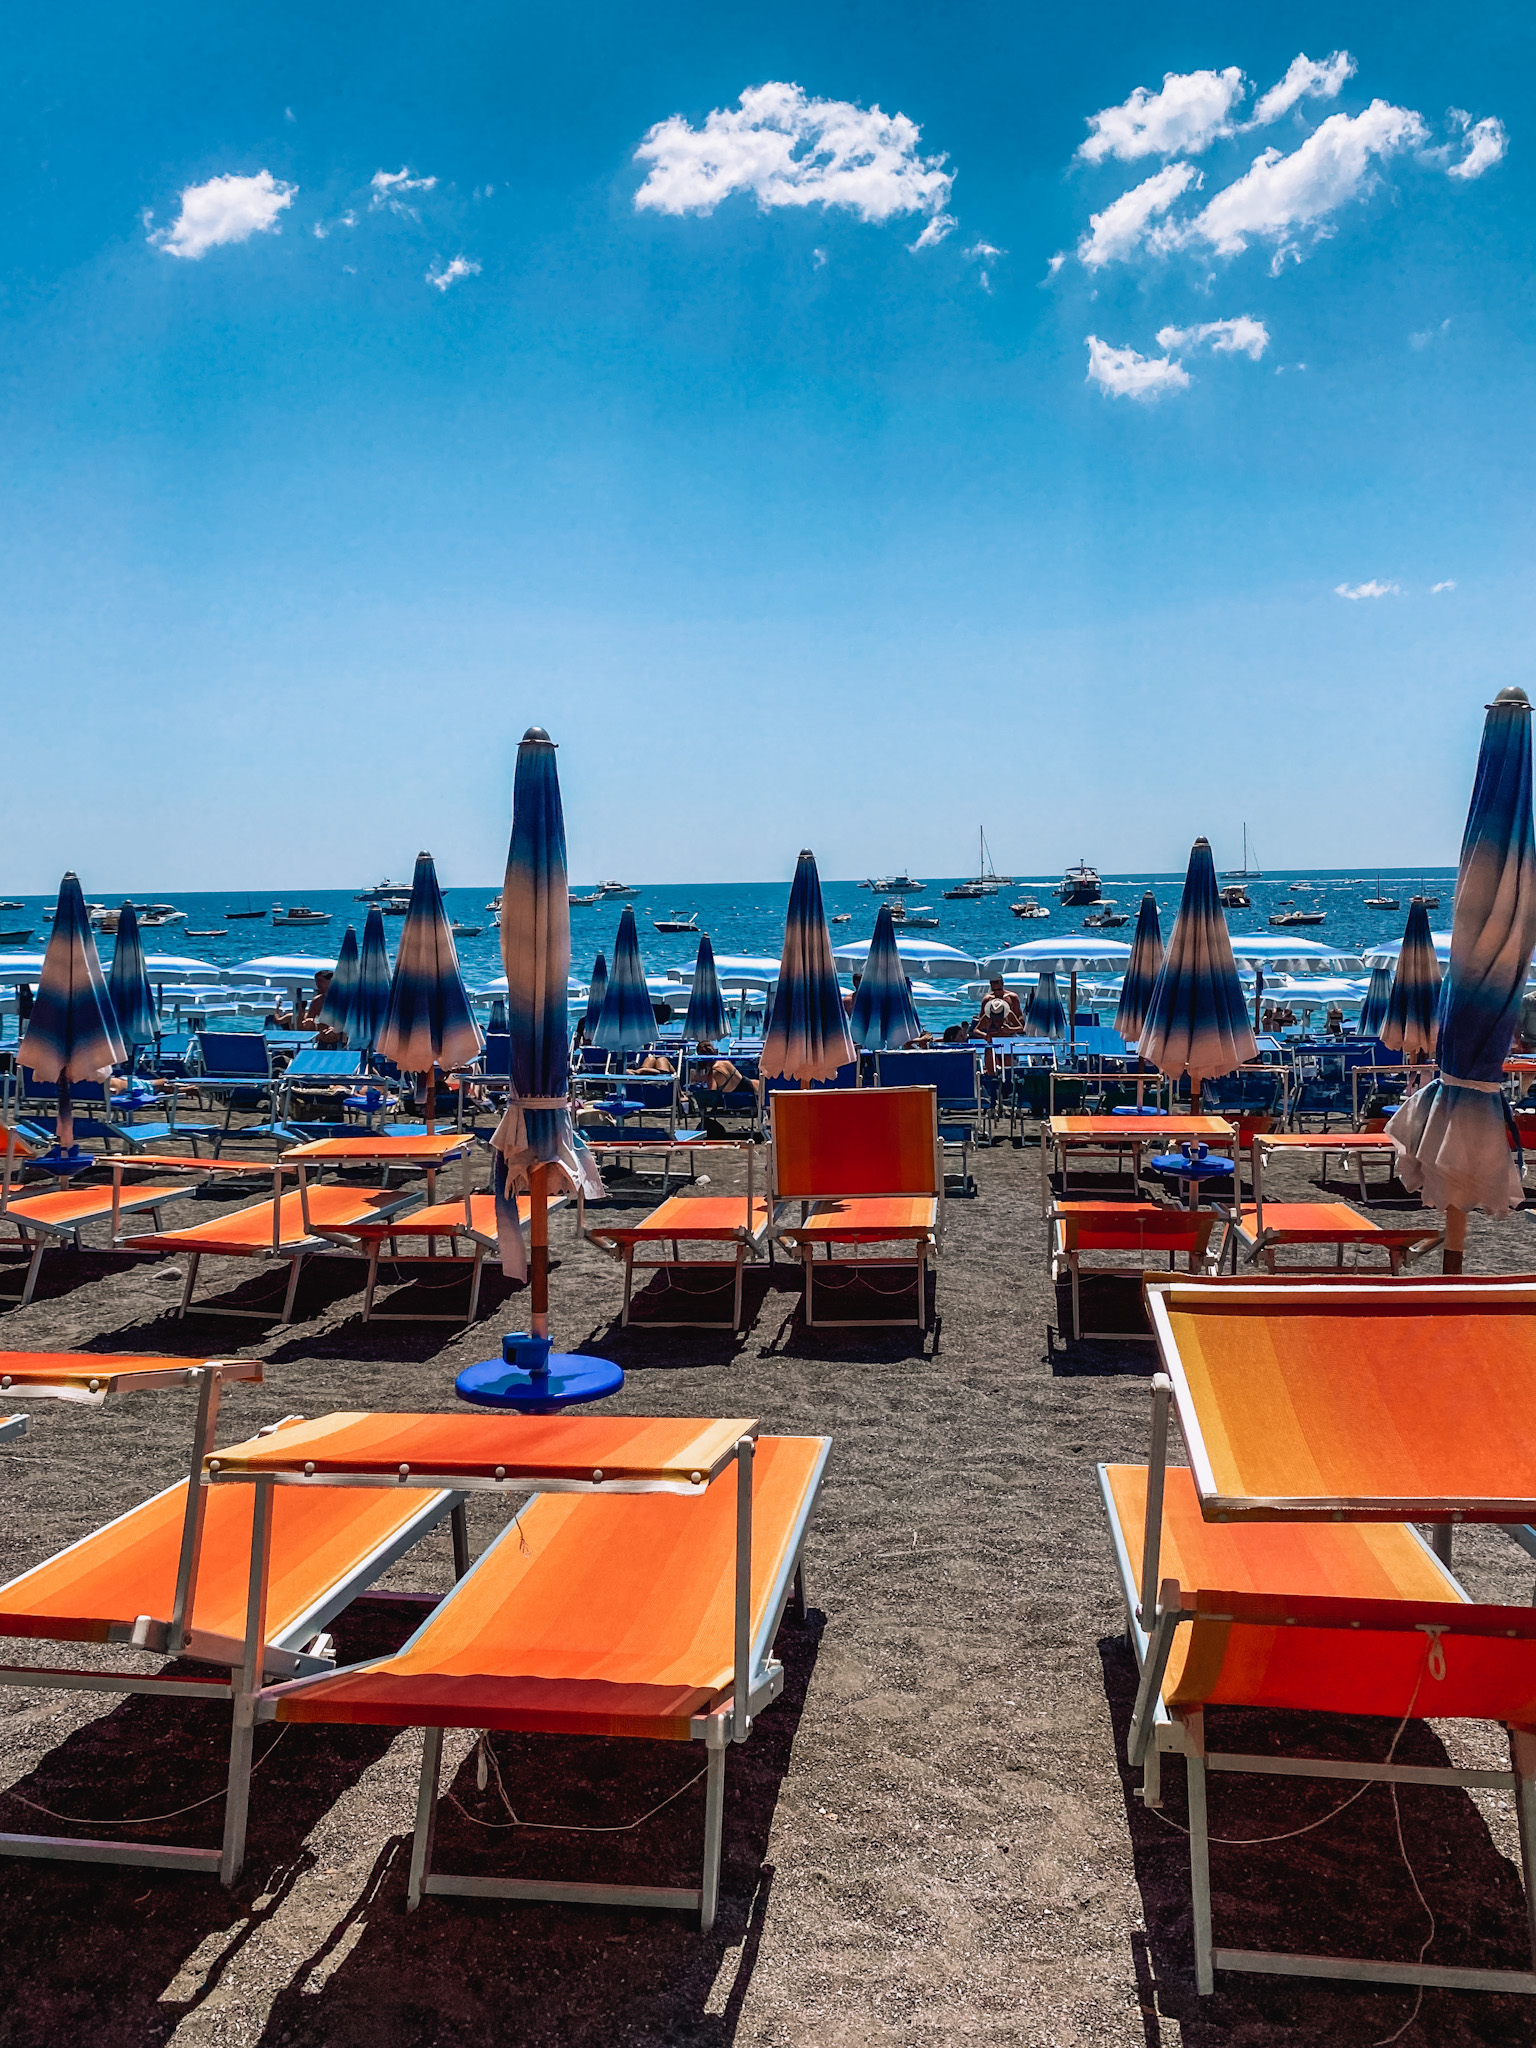 Amalfi Coast Travel Guide - Beaches